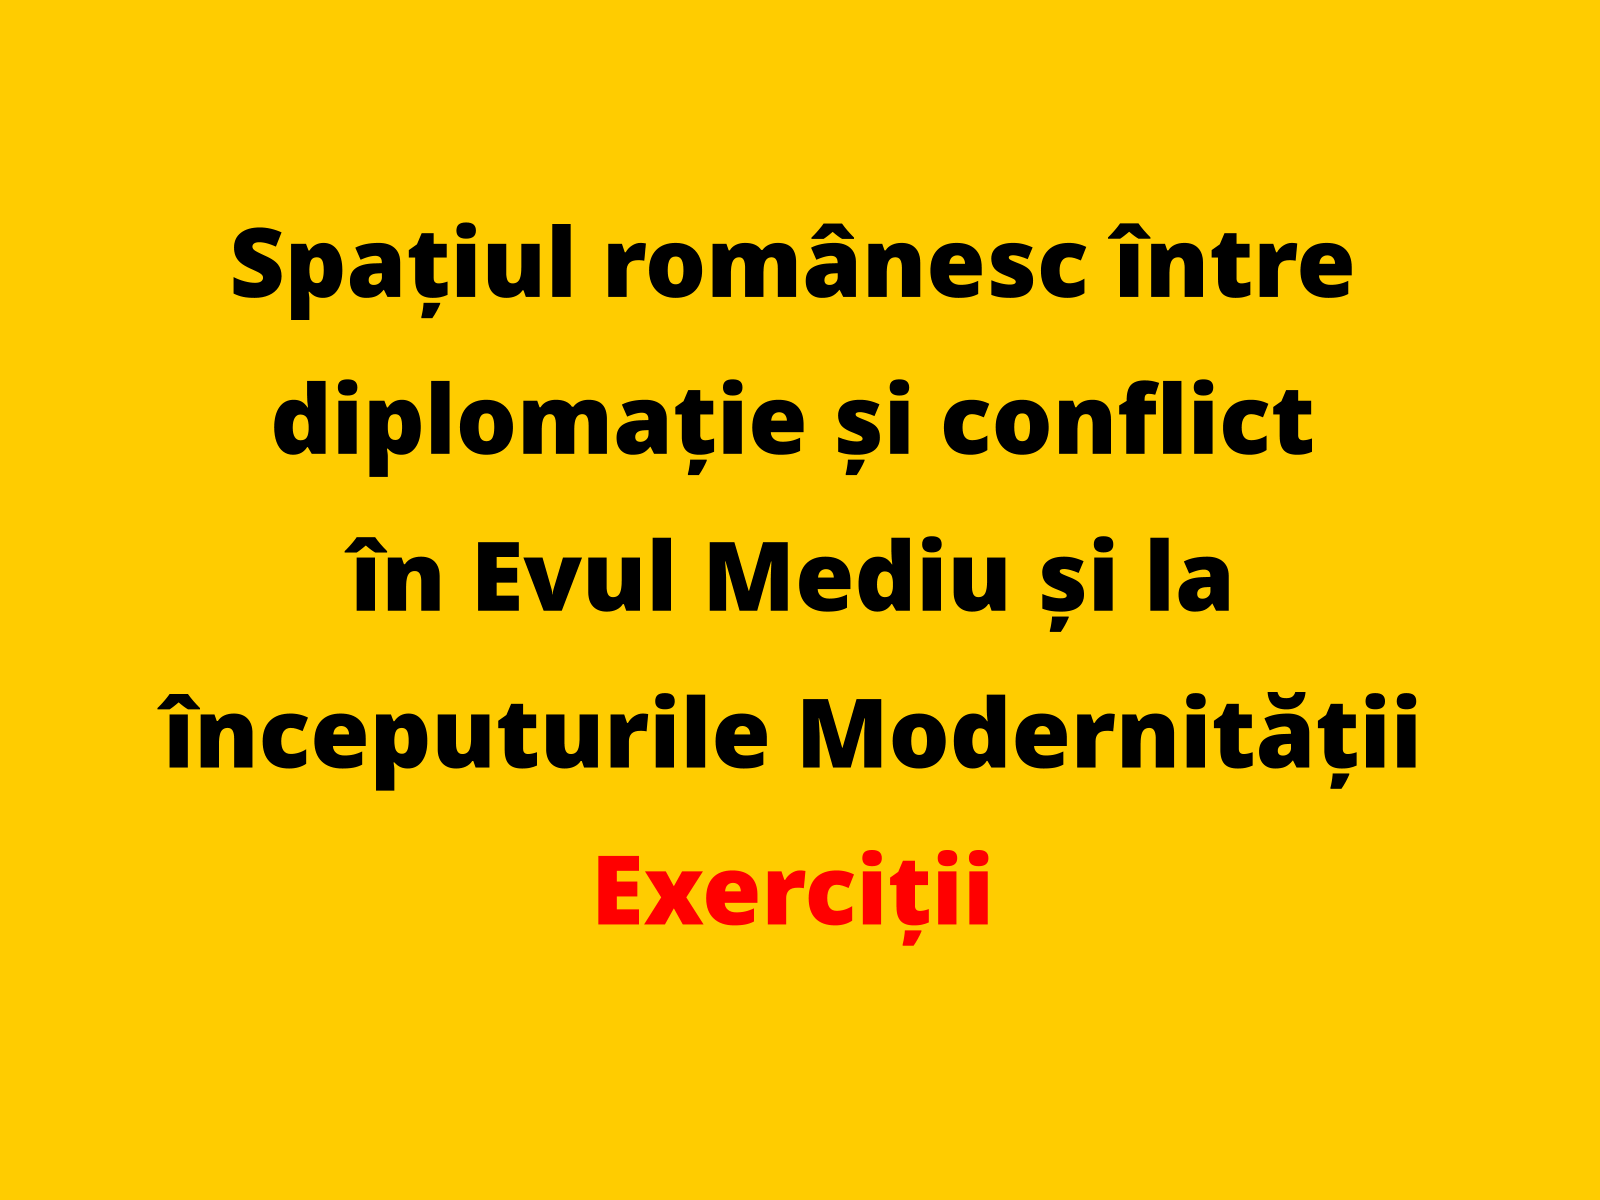 Menționați o asemănare între două conflicte desfășurate în spațiul românesc în Evul Mediu